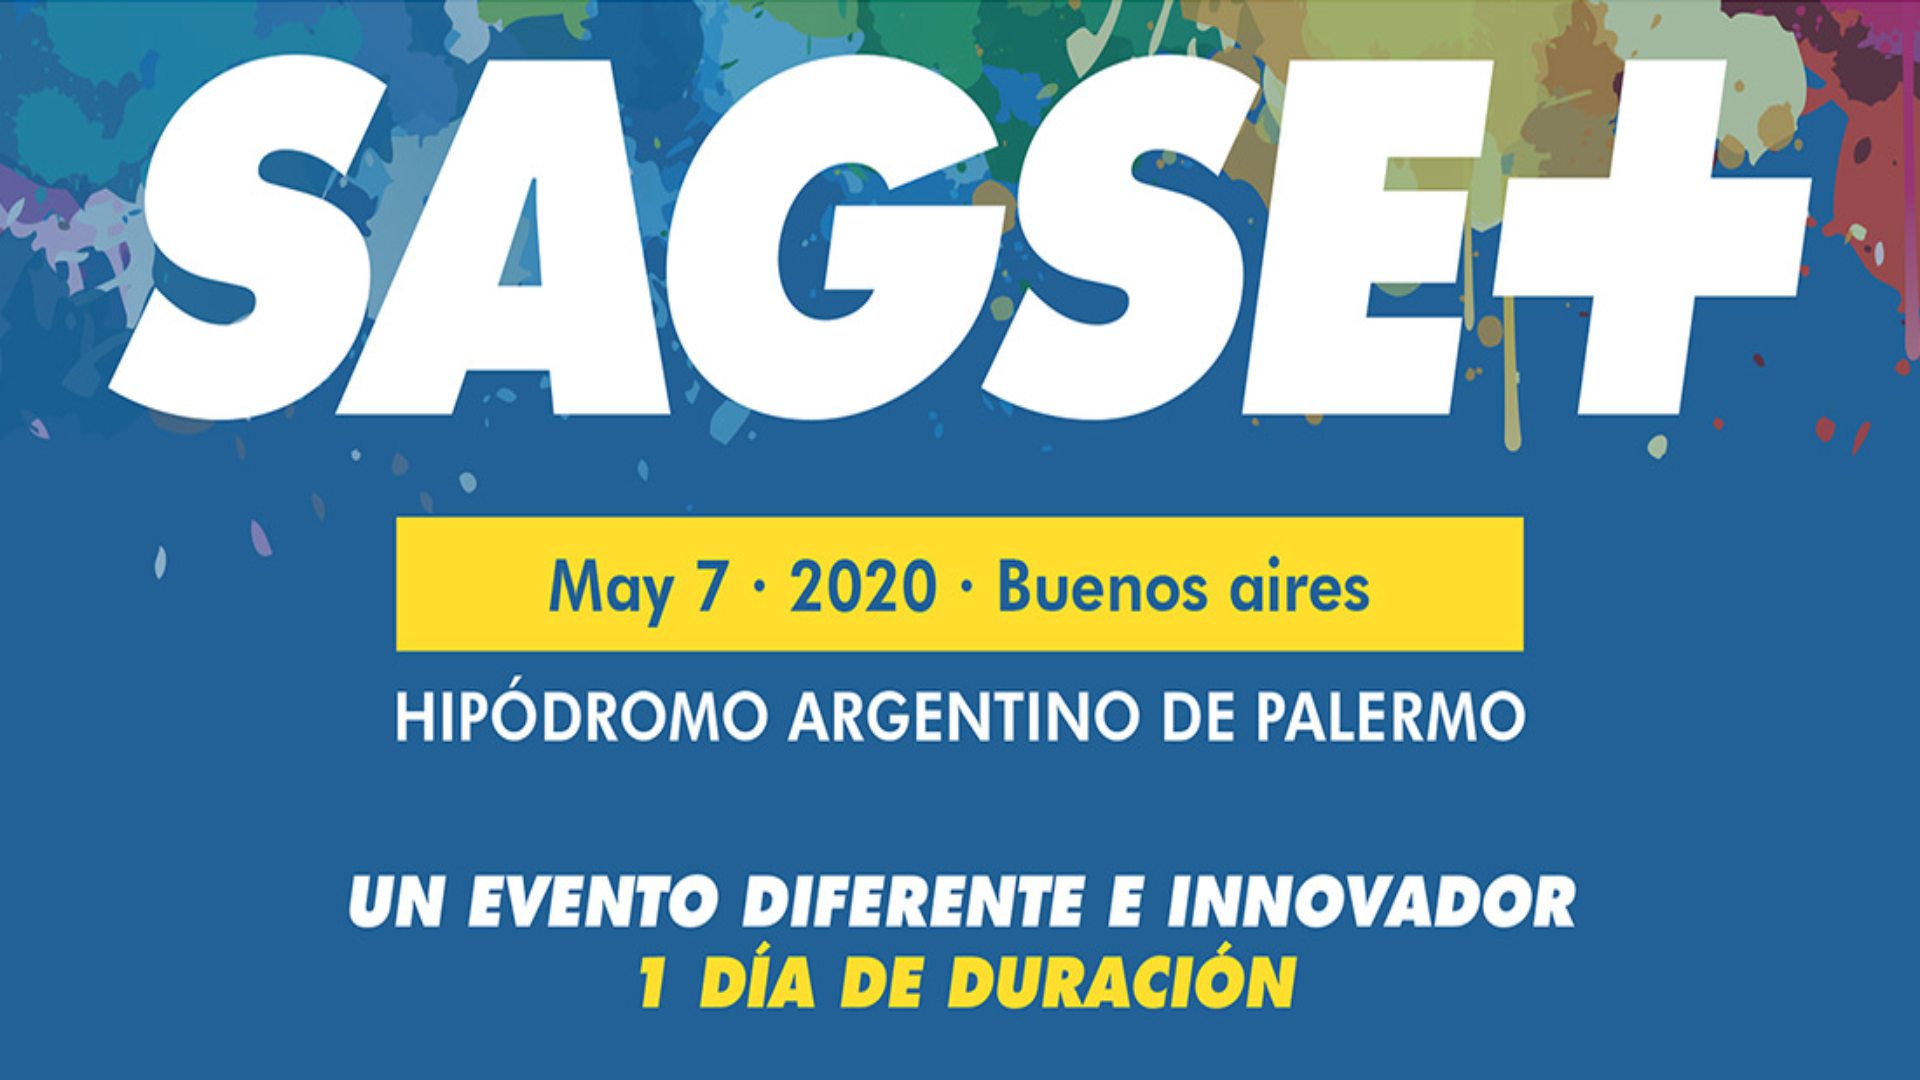 O primeiro evento da SAGSE em 2020 terá lugar no Hipódromo Argentino de Palermo em 7 de maio em Buenos Aires.